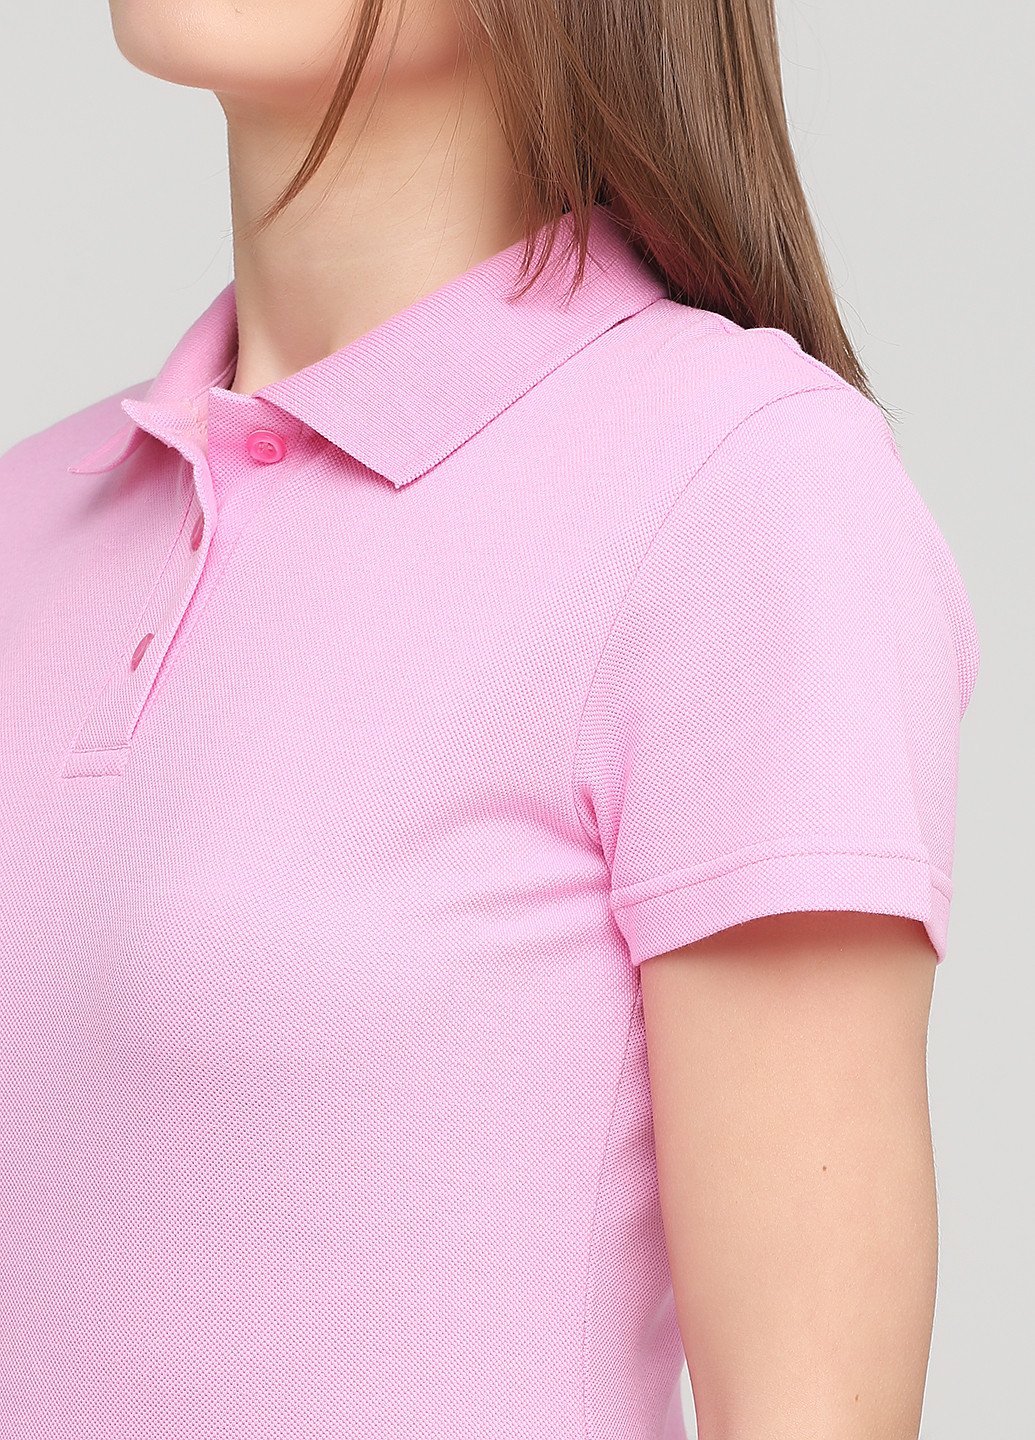 Розовая женская футболка-футболка поло женская розовая классическая Melgo однотонная